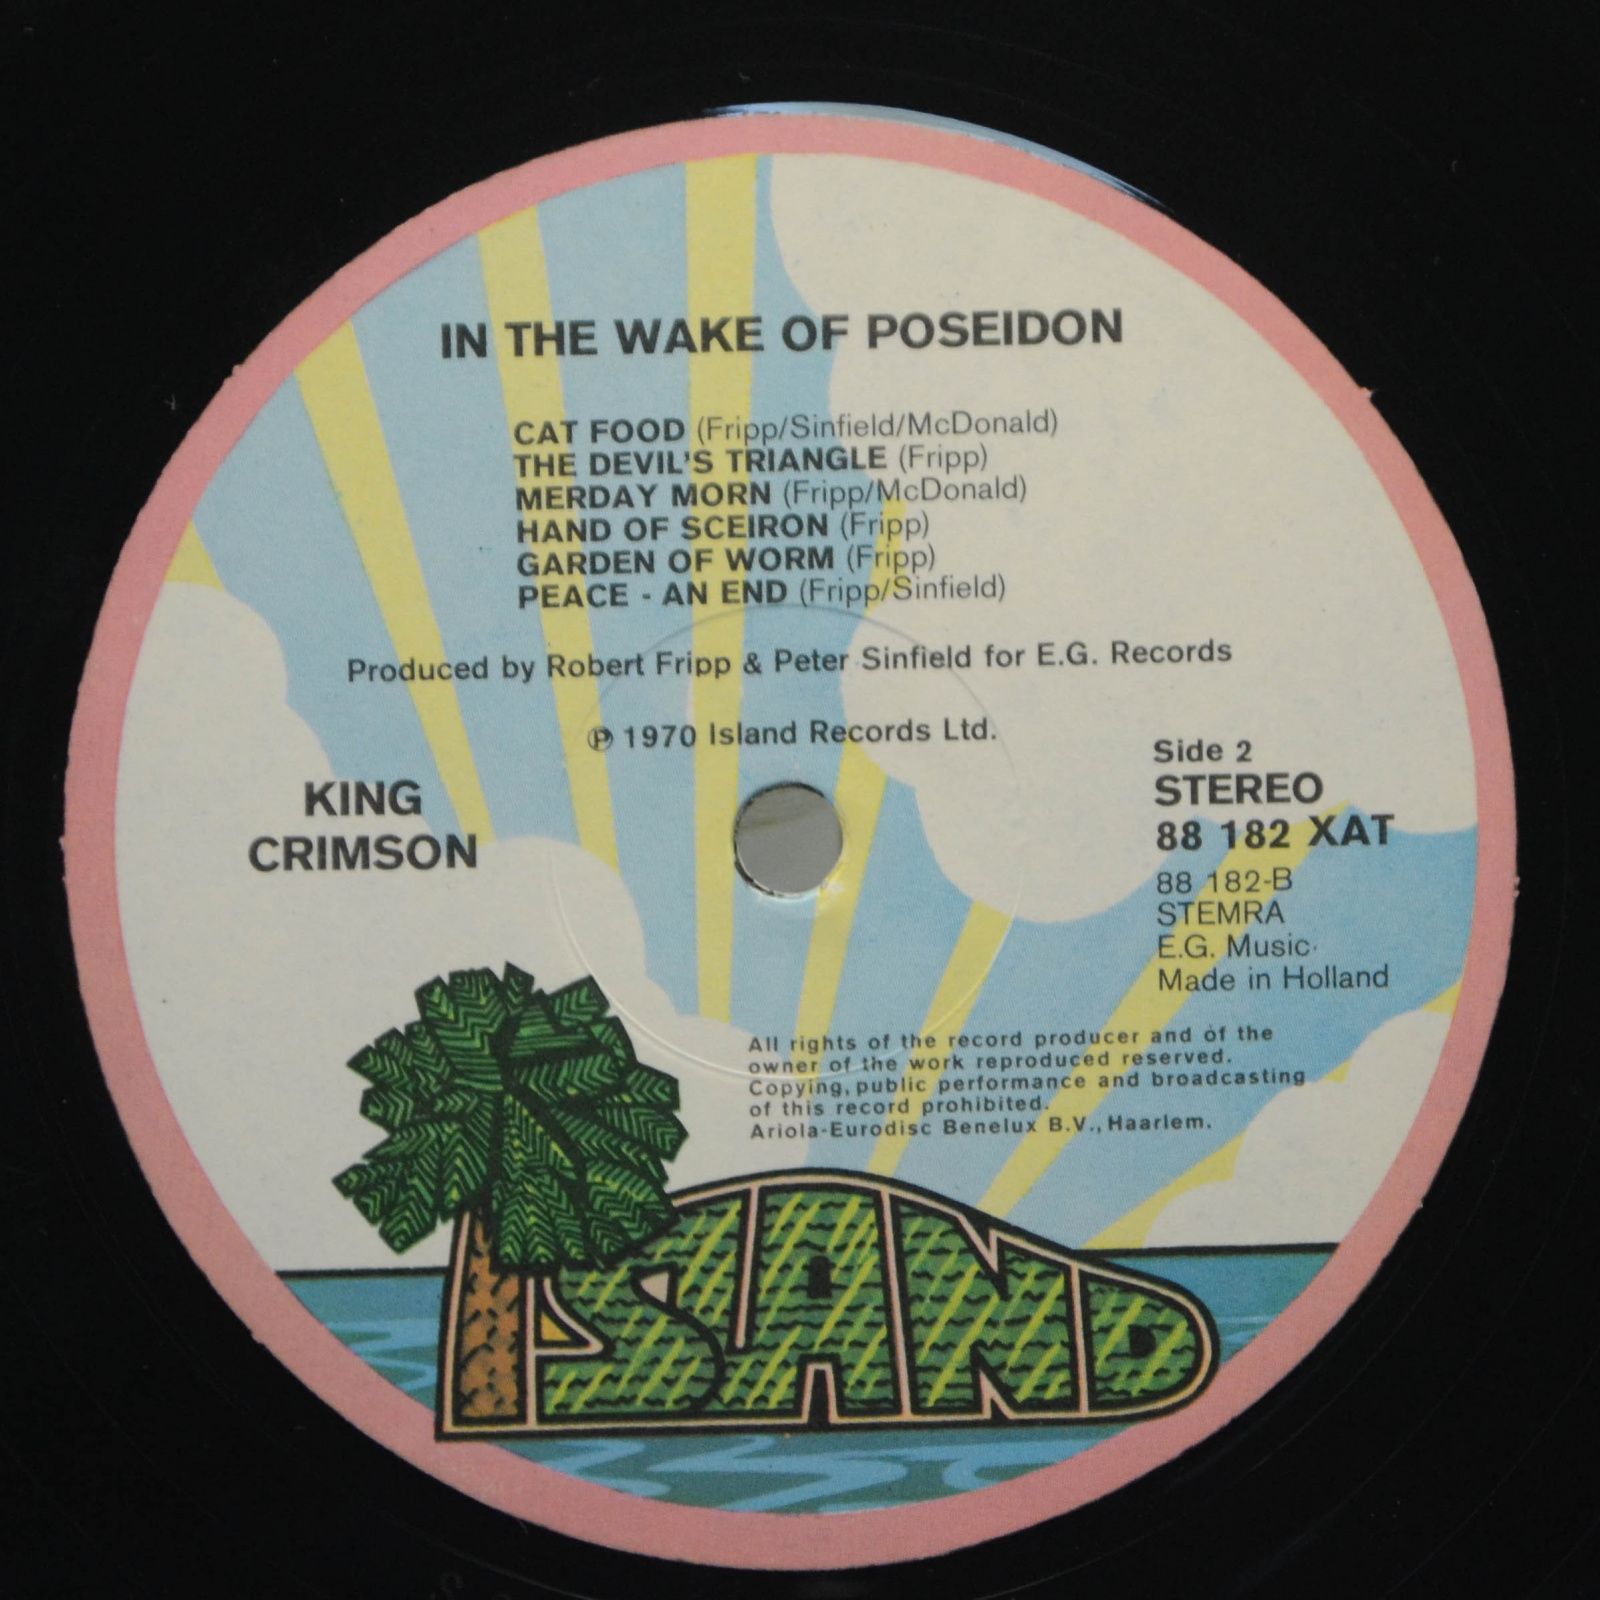 King Crimson — In The Wake Of Poseidon, 1974